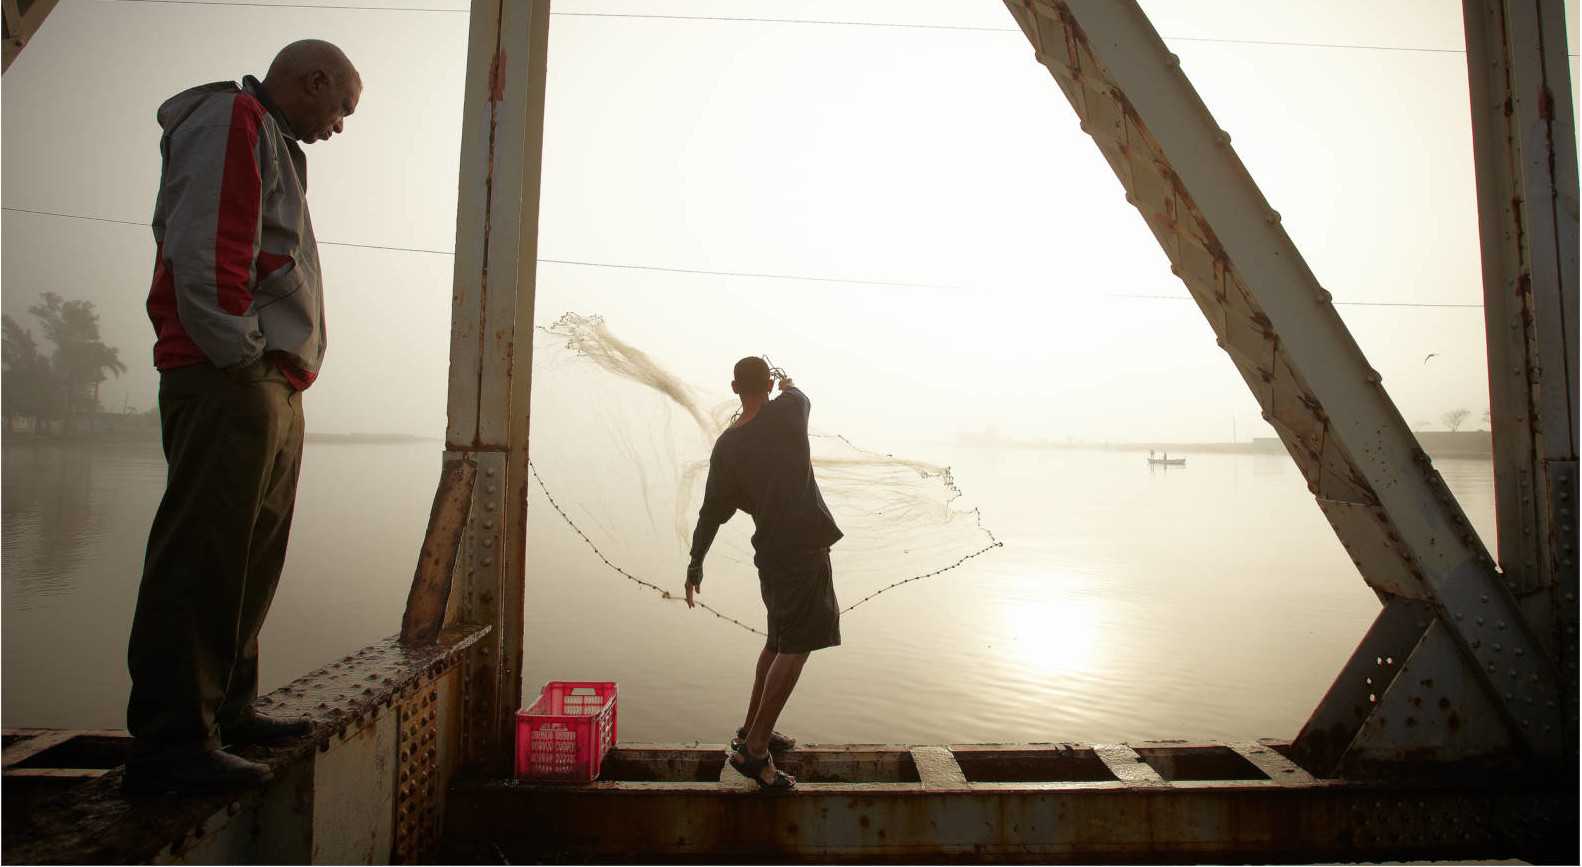 Net fishing in Maine